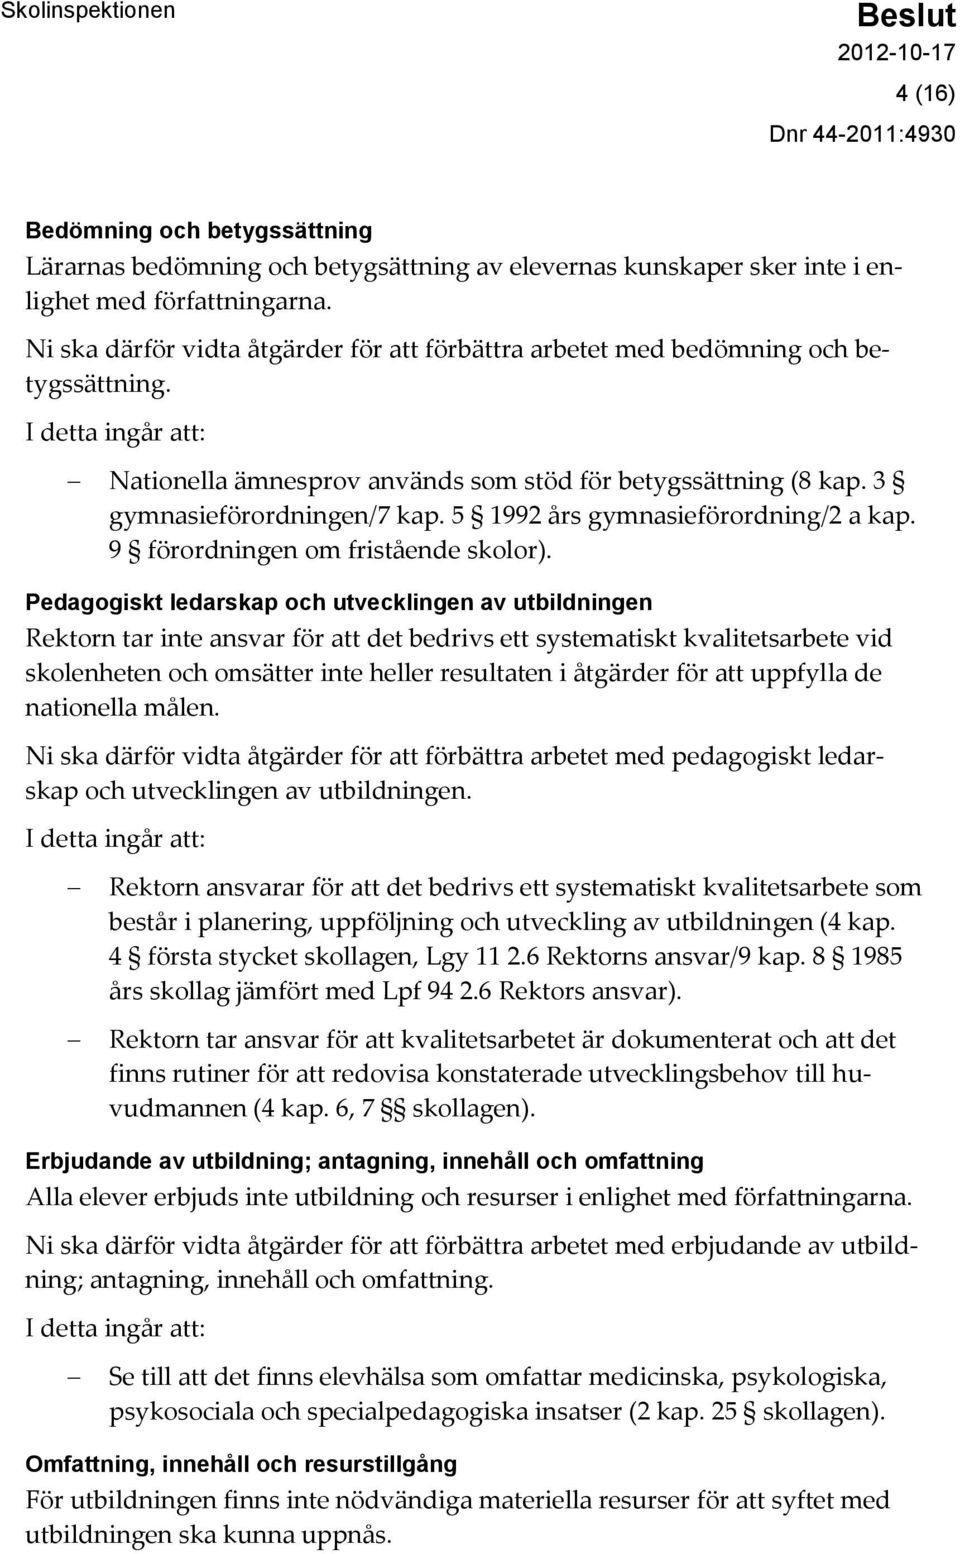 3 gymnasieförordningen/7 kap. 5 1992 års gymnasieförordning/2 a kap. 9 förordningen om fristående skolor).